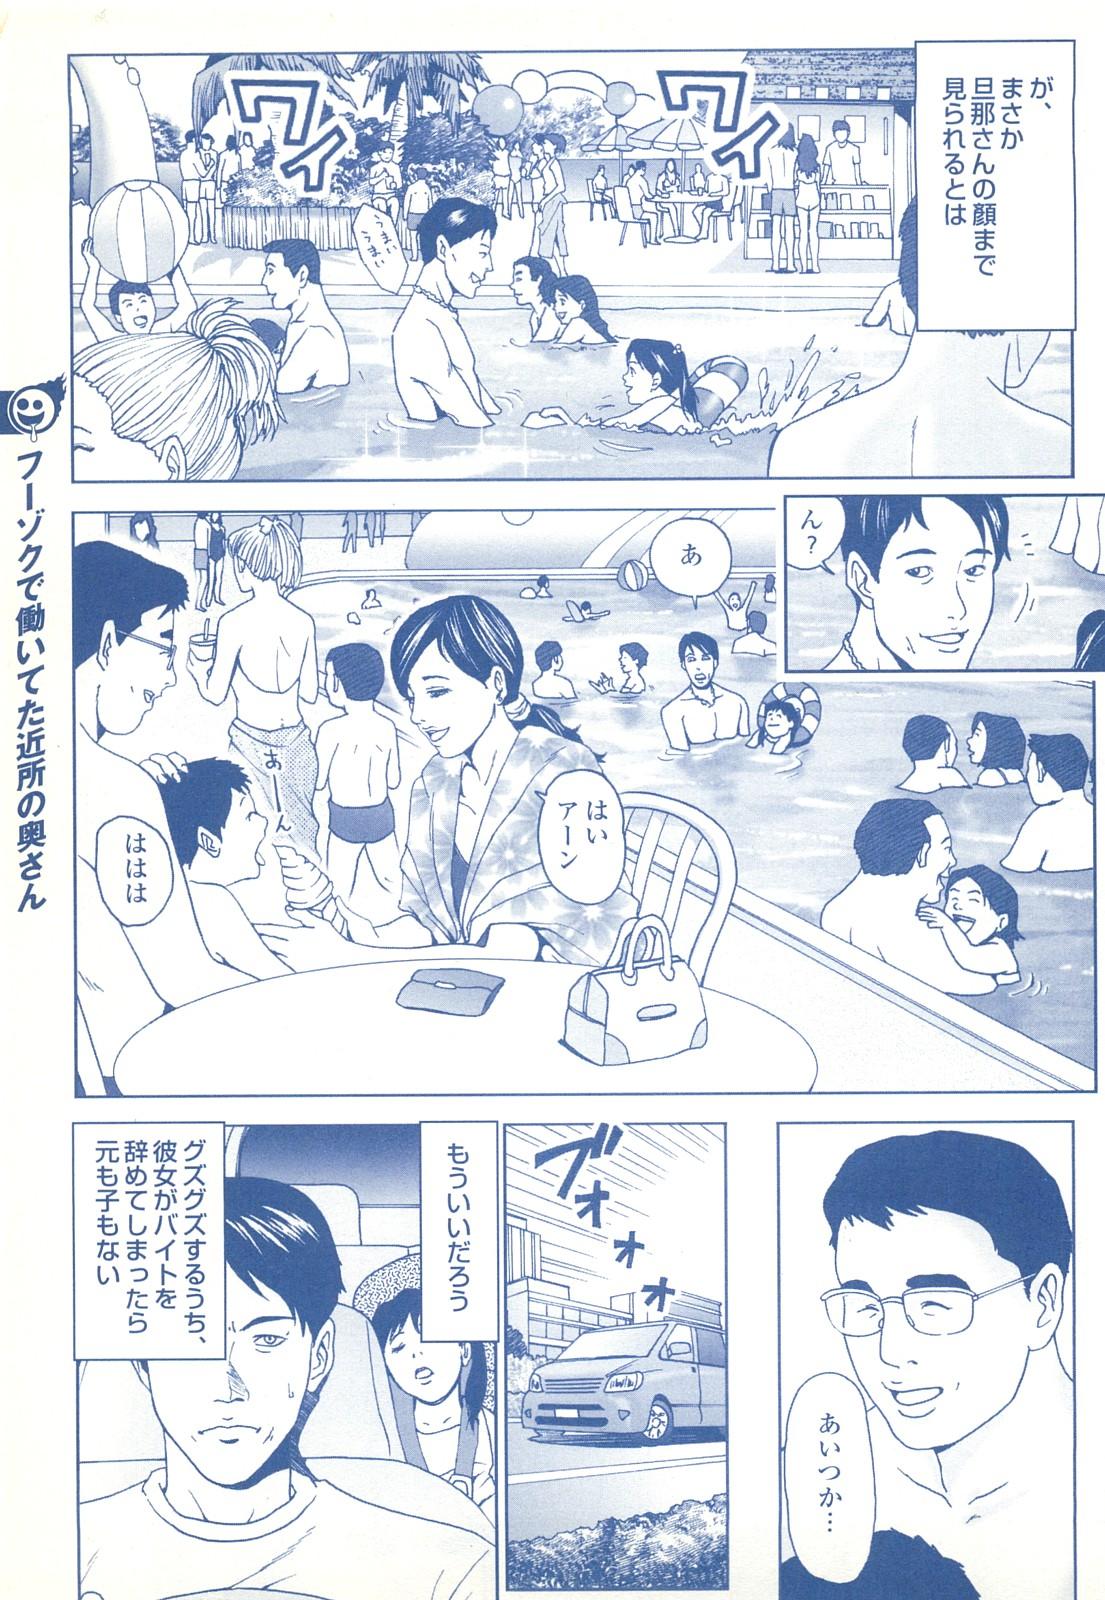 コミック裏モノJAPAN Vol.18 今井のりたつスペシャル号 200